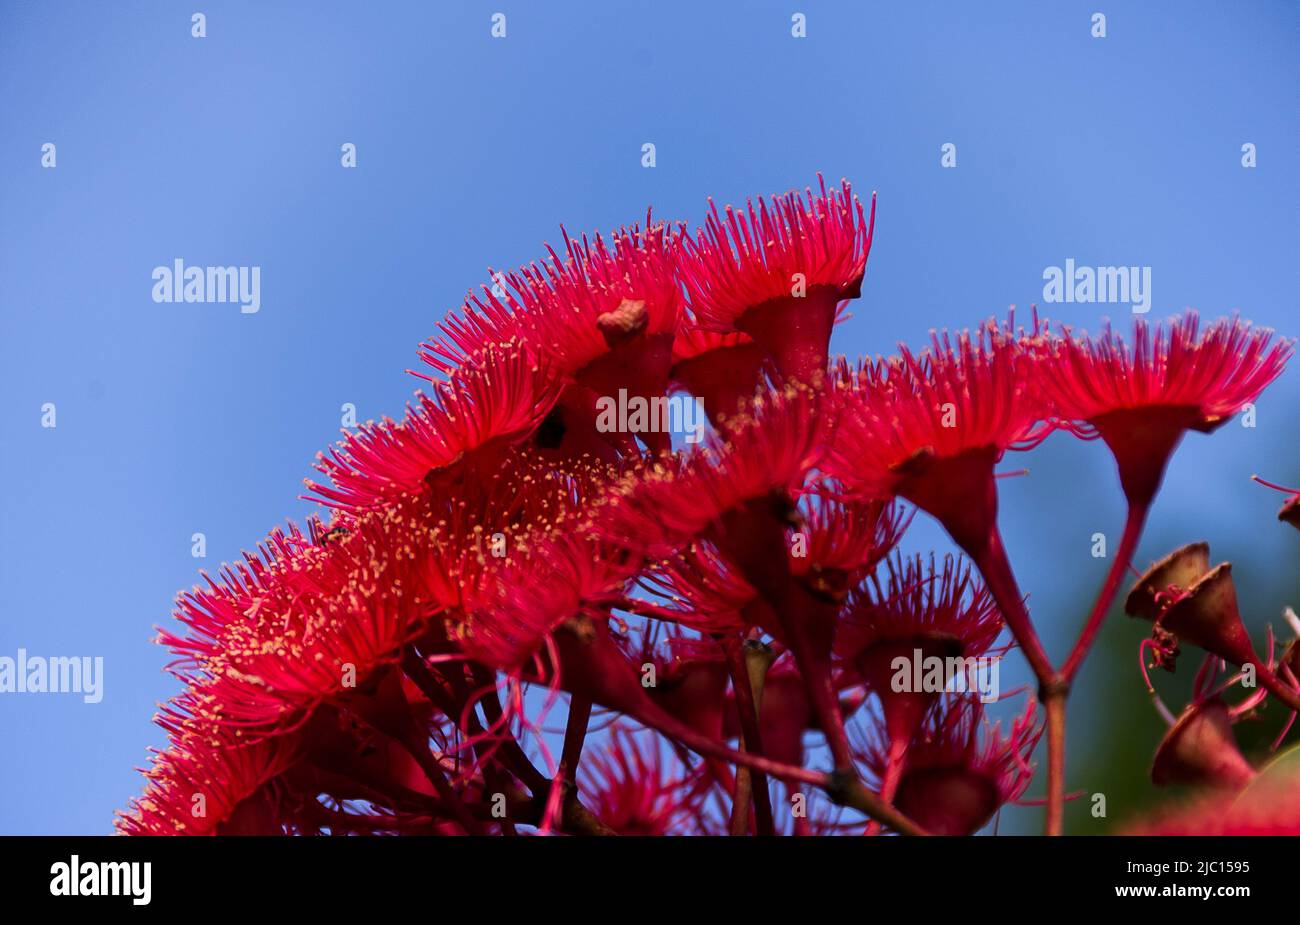 Leuchtend rosa und rote Blüten von Australian Red Flowering Gum, Corymbia ficifolia, vor einem blauen Himmel. Queensland Garden. Speicherplatz Kopieren. Stockfoto